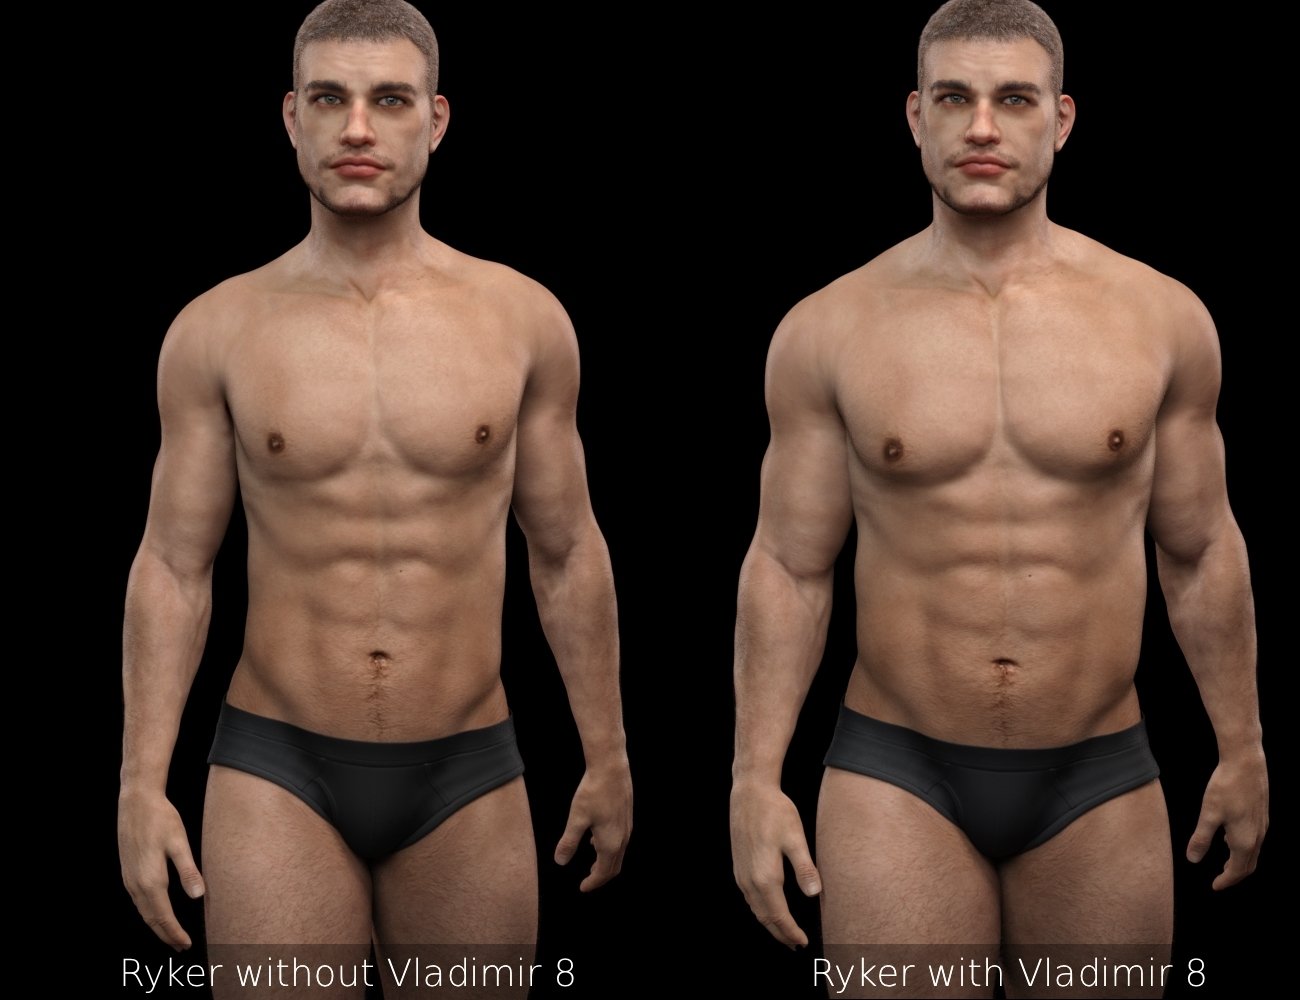 Ryker HD for Vladimir 8 by: RedzStudio, 3D Models by Daz 3D